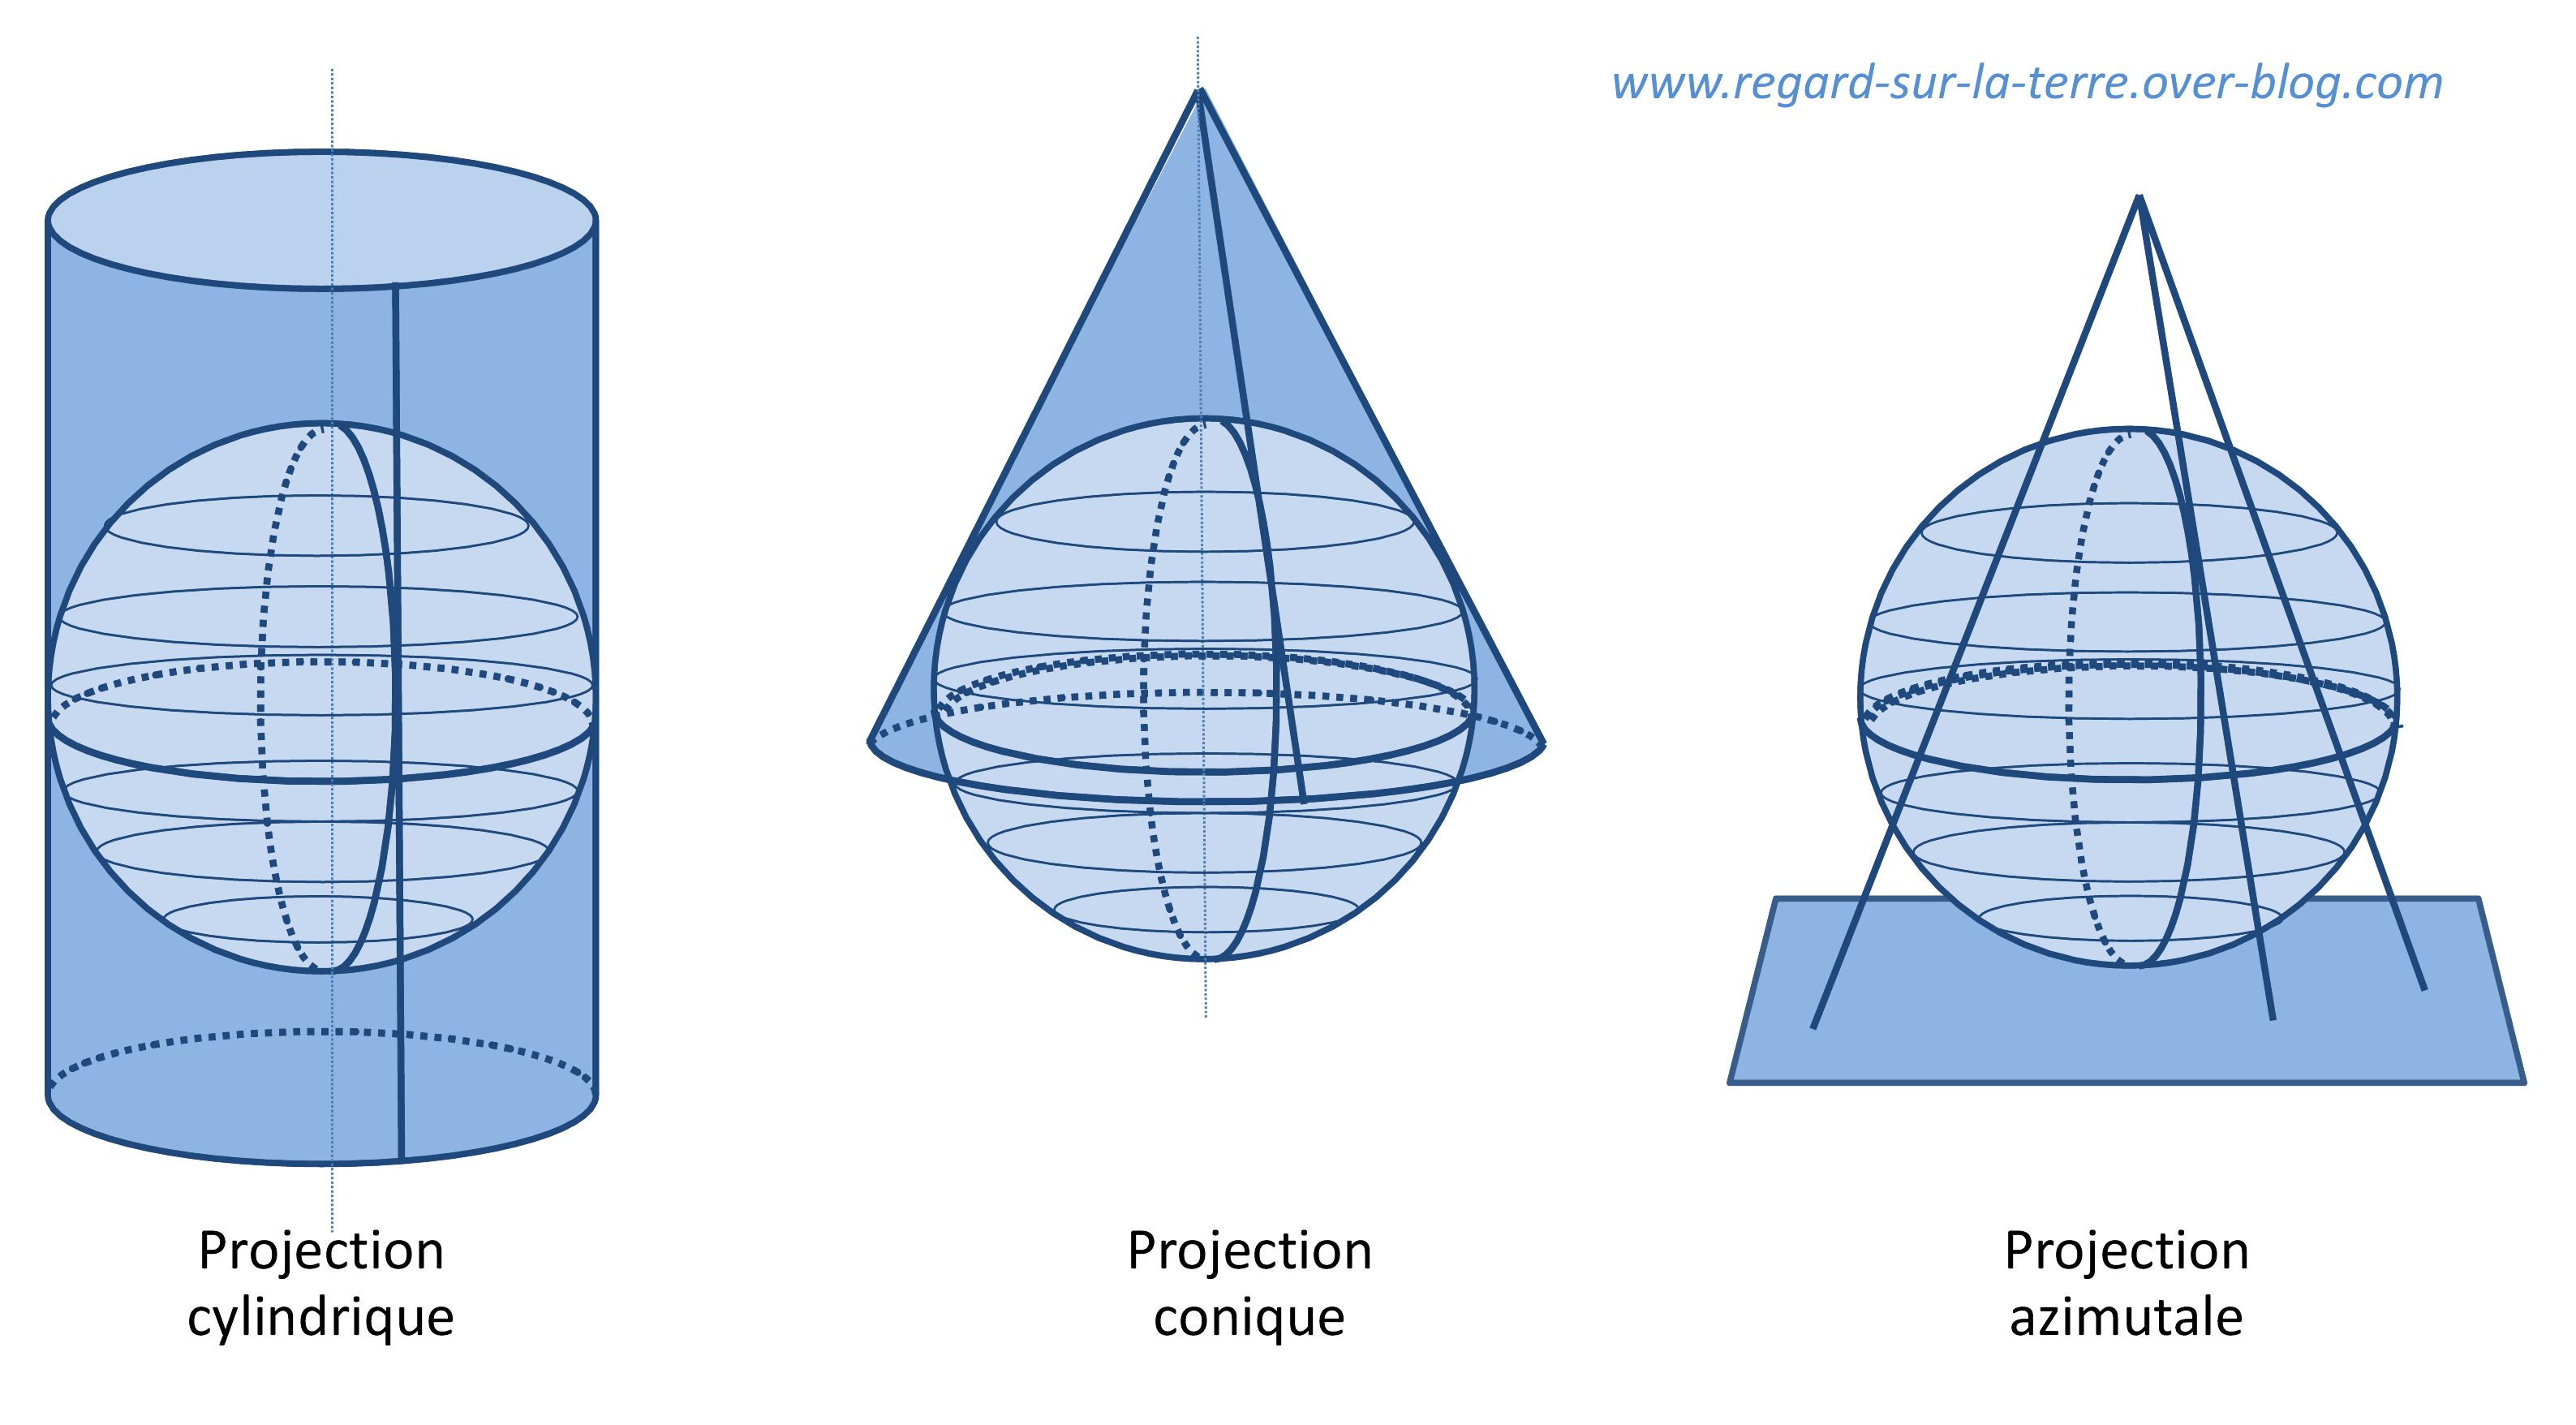 Projection cartographiques - Projection cylindrique - Projection conique - Projection azimutale - De la Terre à la carte - Gédéon